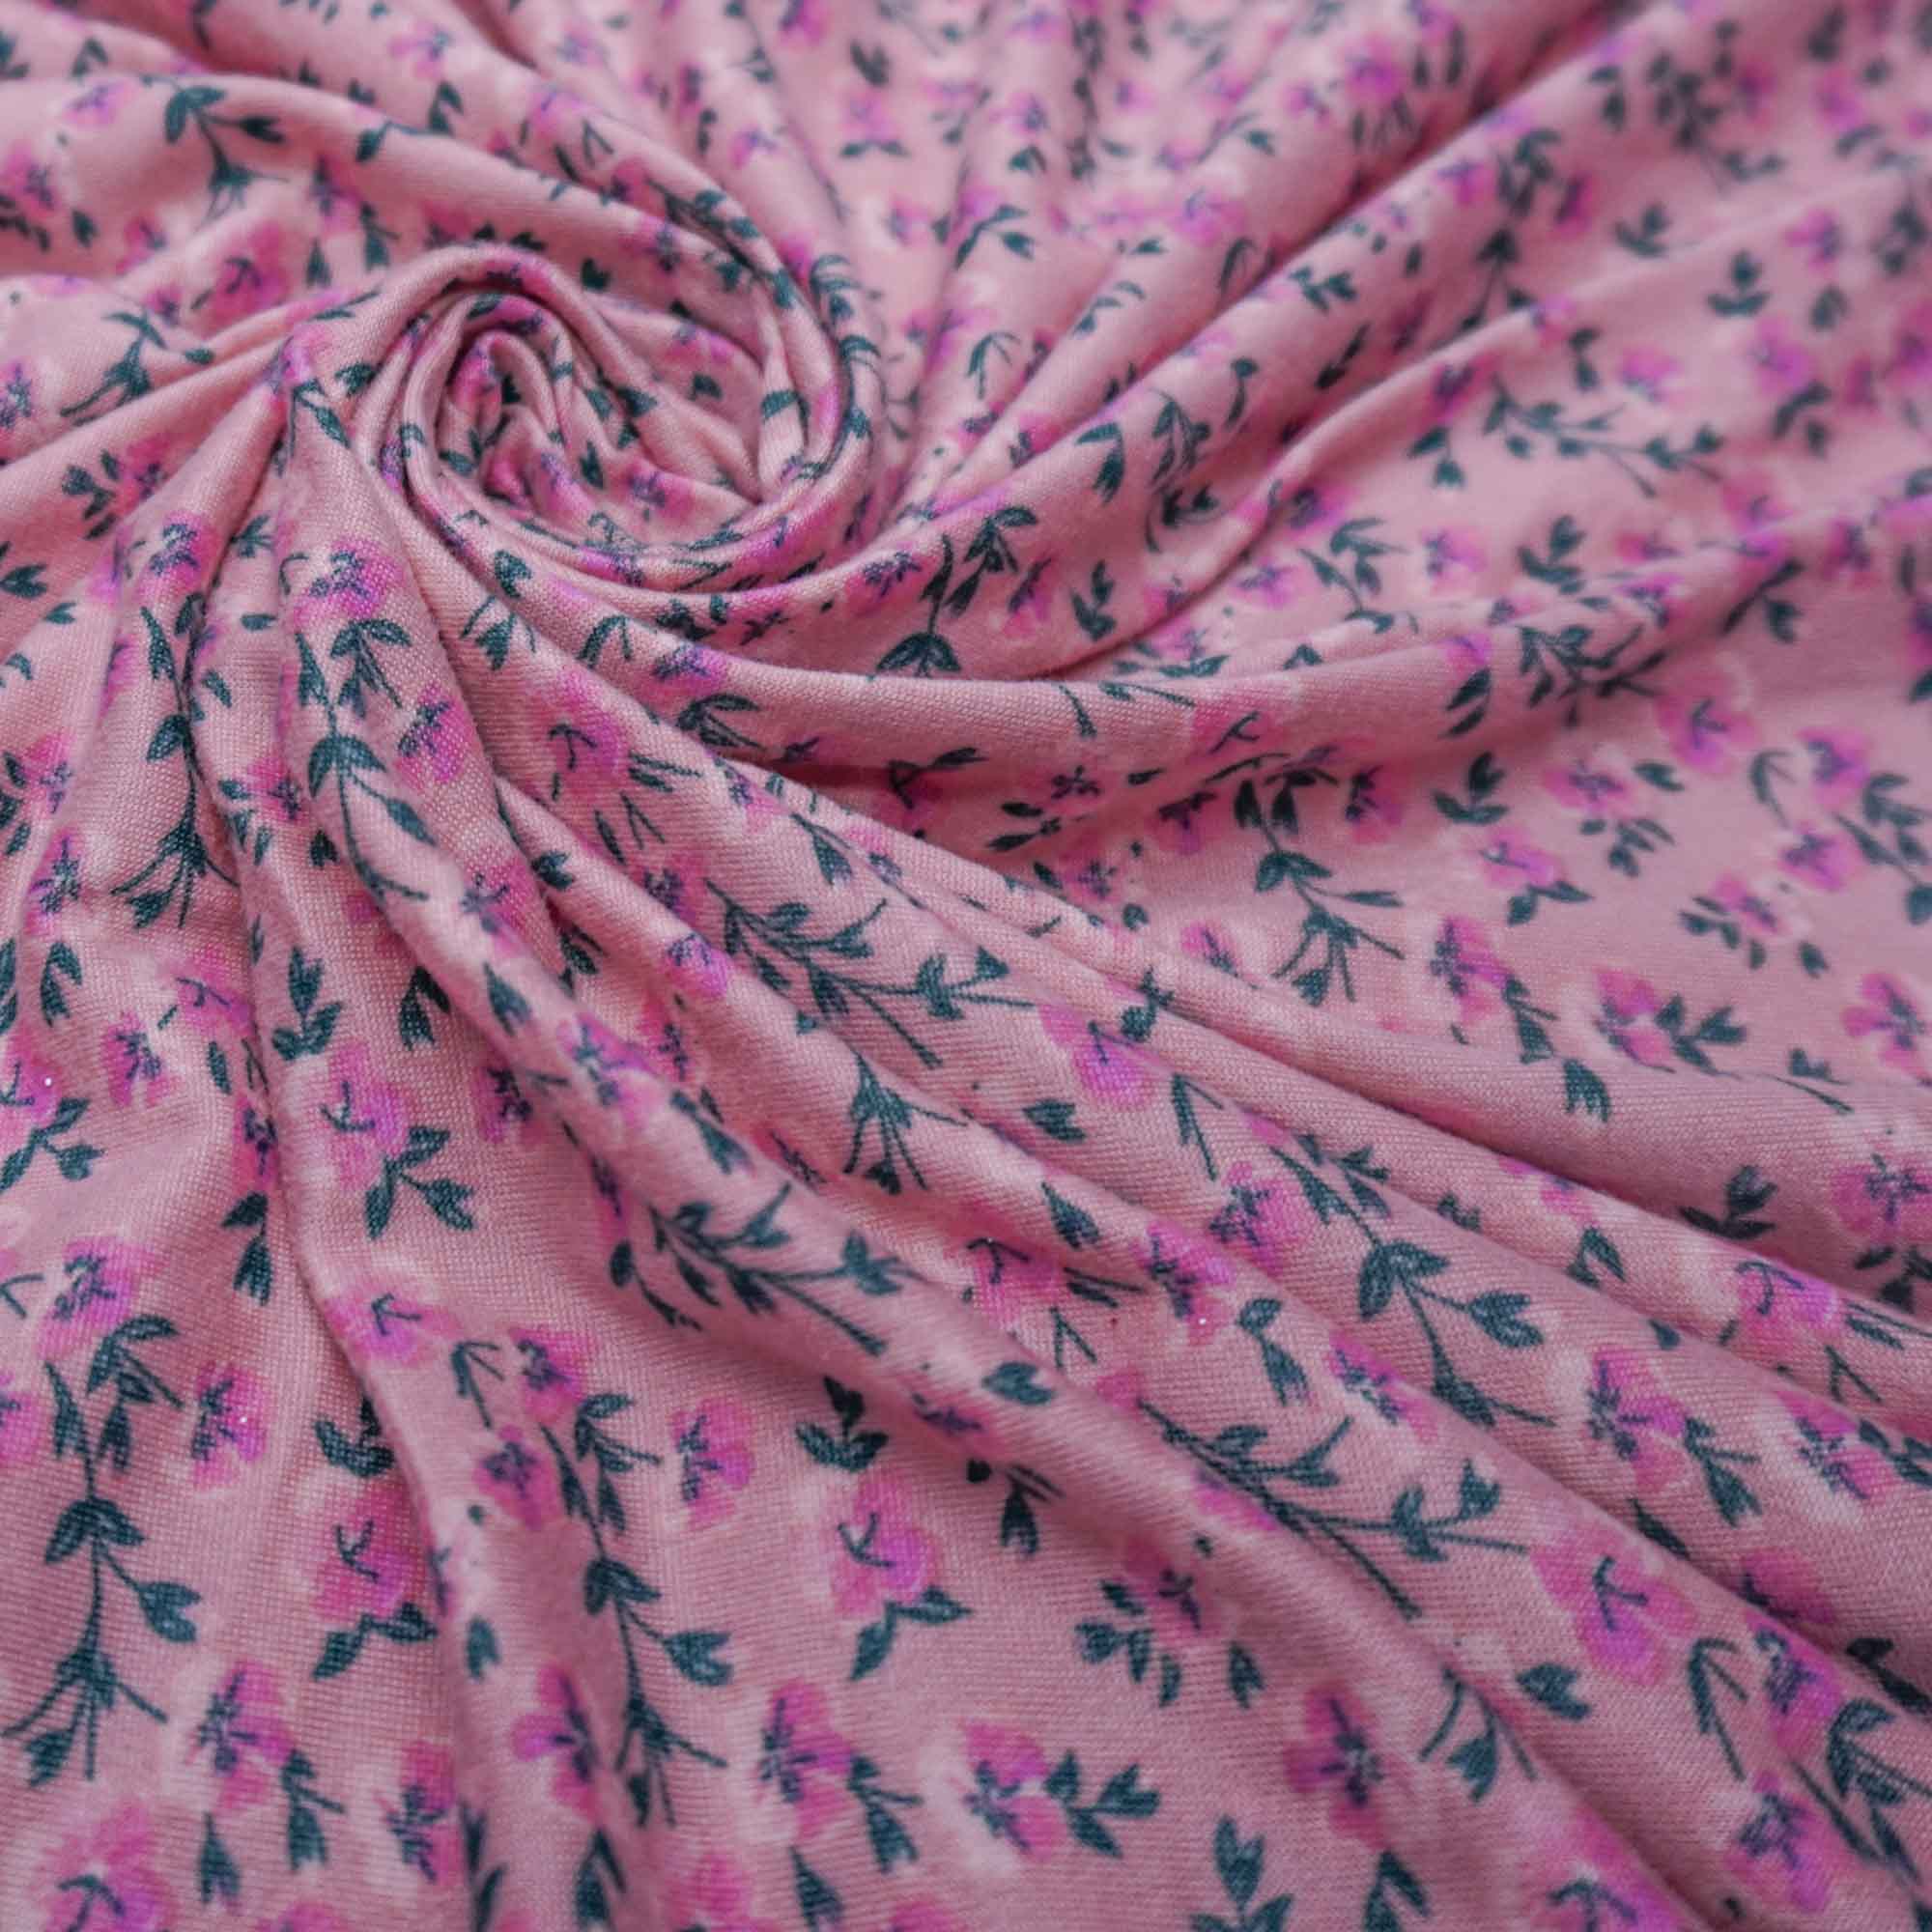 Tecido malha viscolycra suede estampado floral rosê